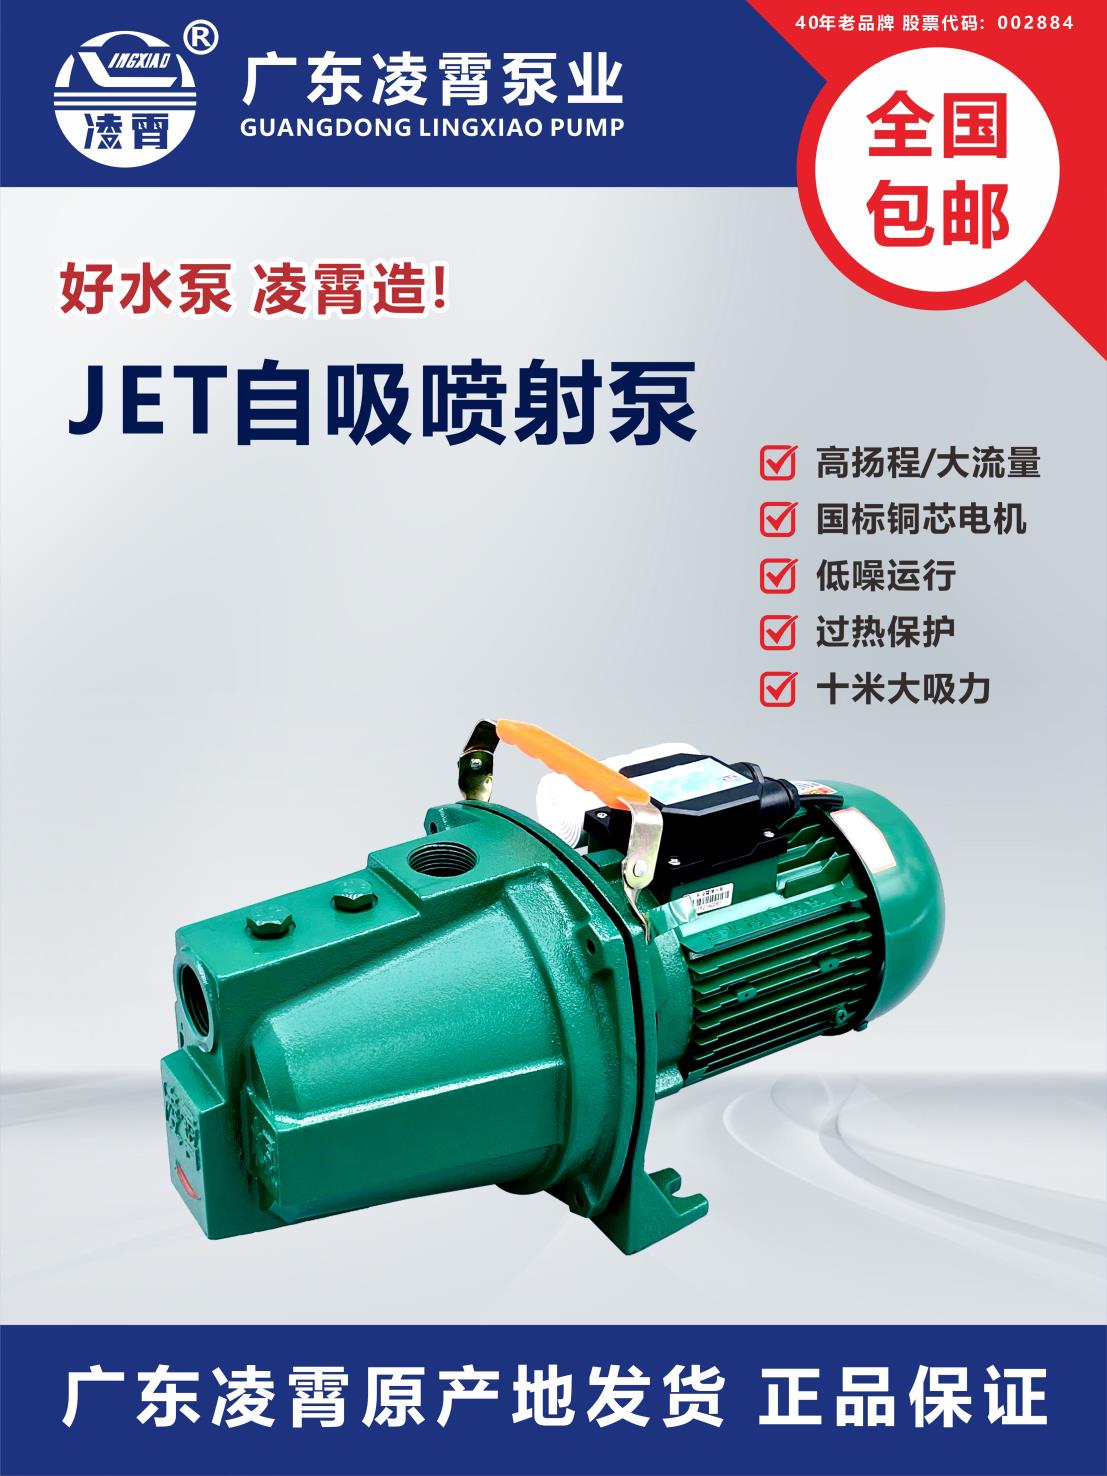 广东凌霄喷射泵家用自吸抽水泵220v大吸力大流量高扬程小型抽水机